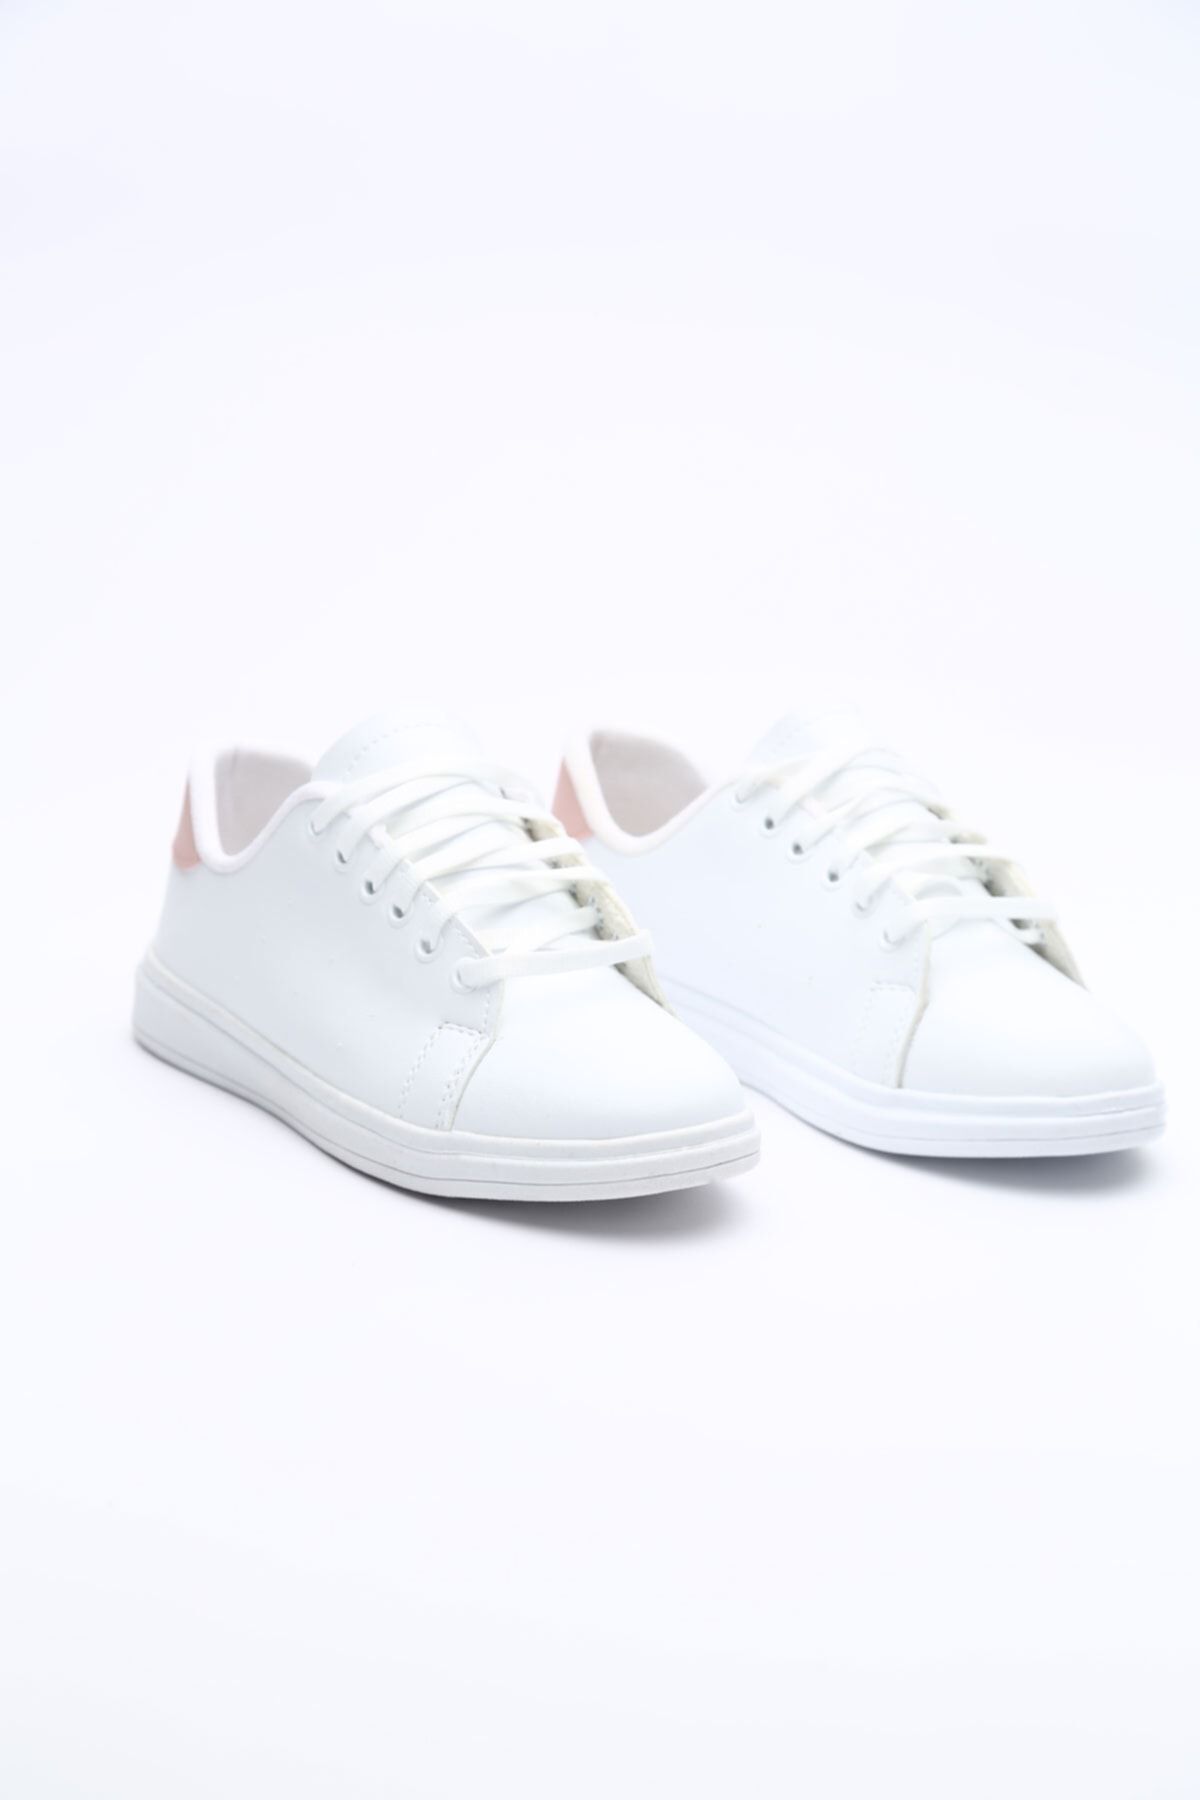 Gob London Beyaz - Kadın Spor Ayakkabı 1029-101-0002